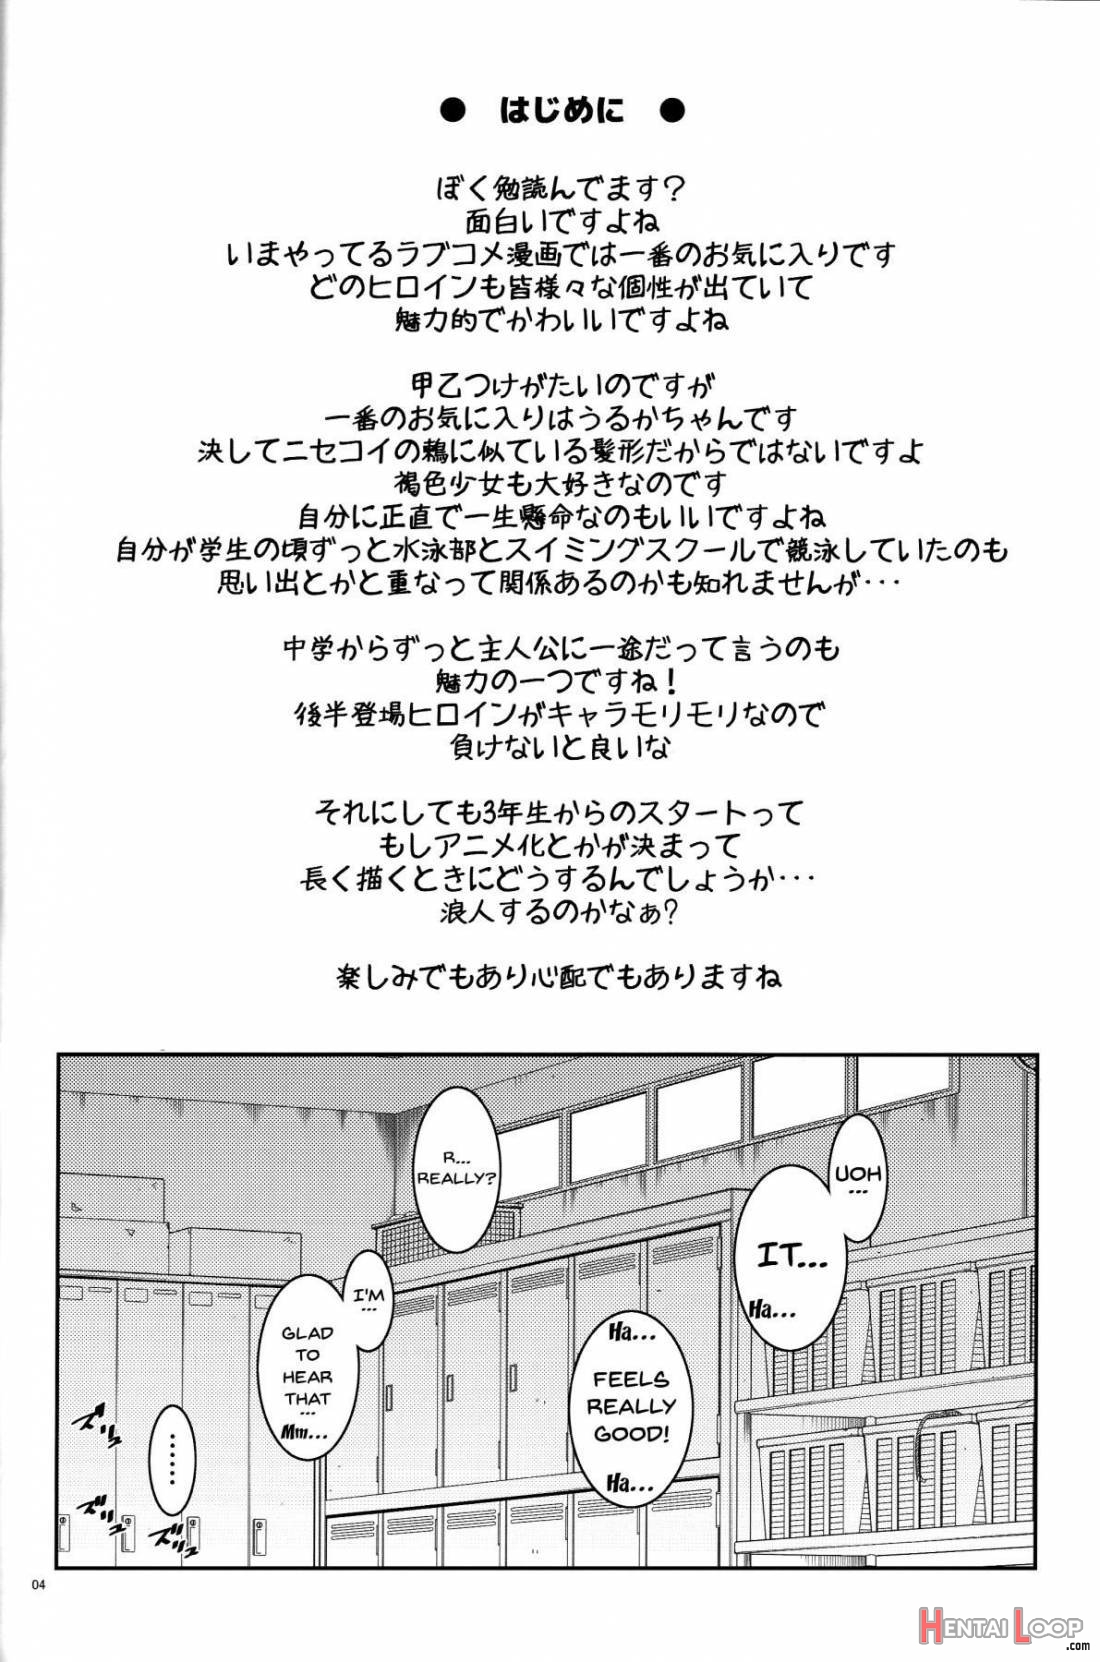 BOKUTACHIHA URUKAGA KAWAII page 2